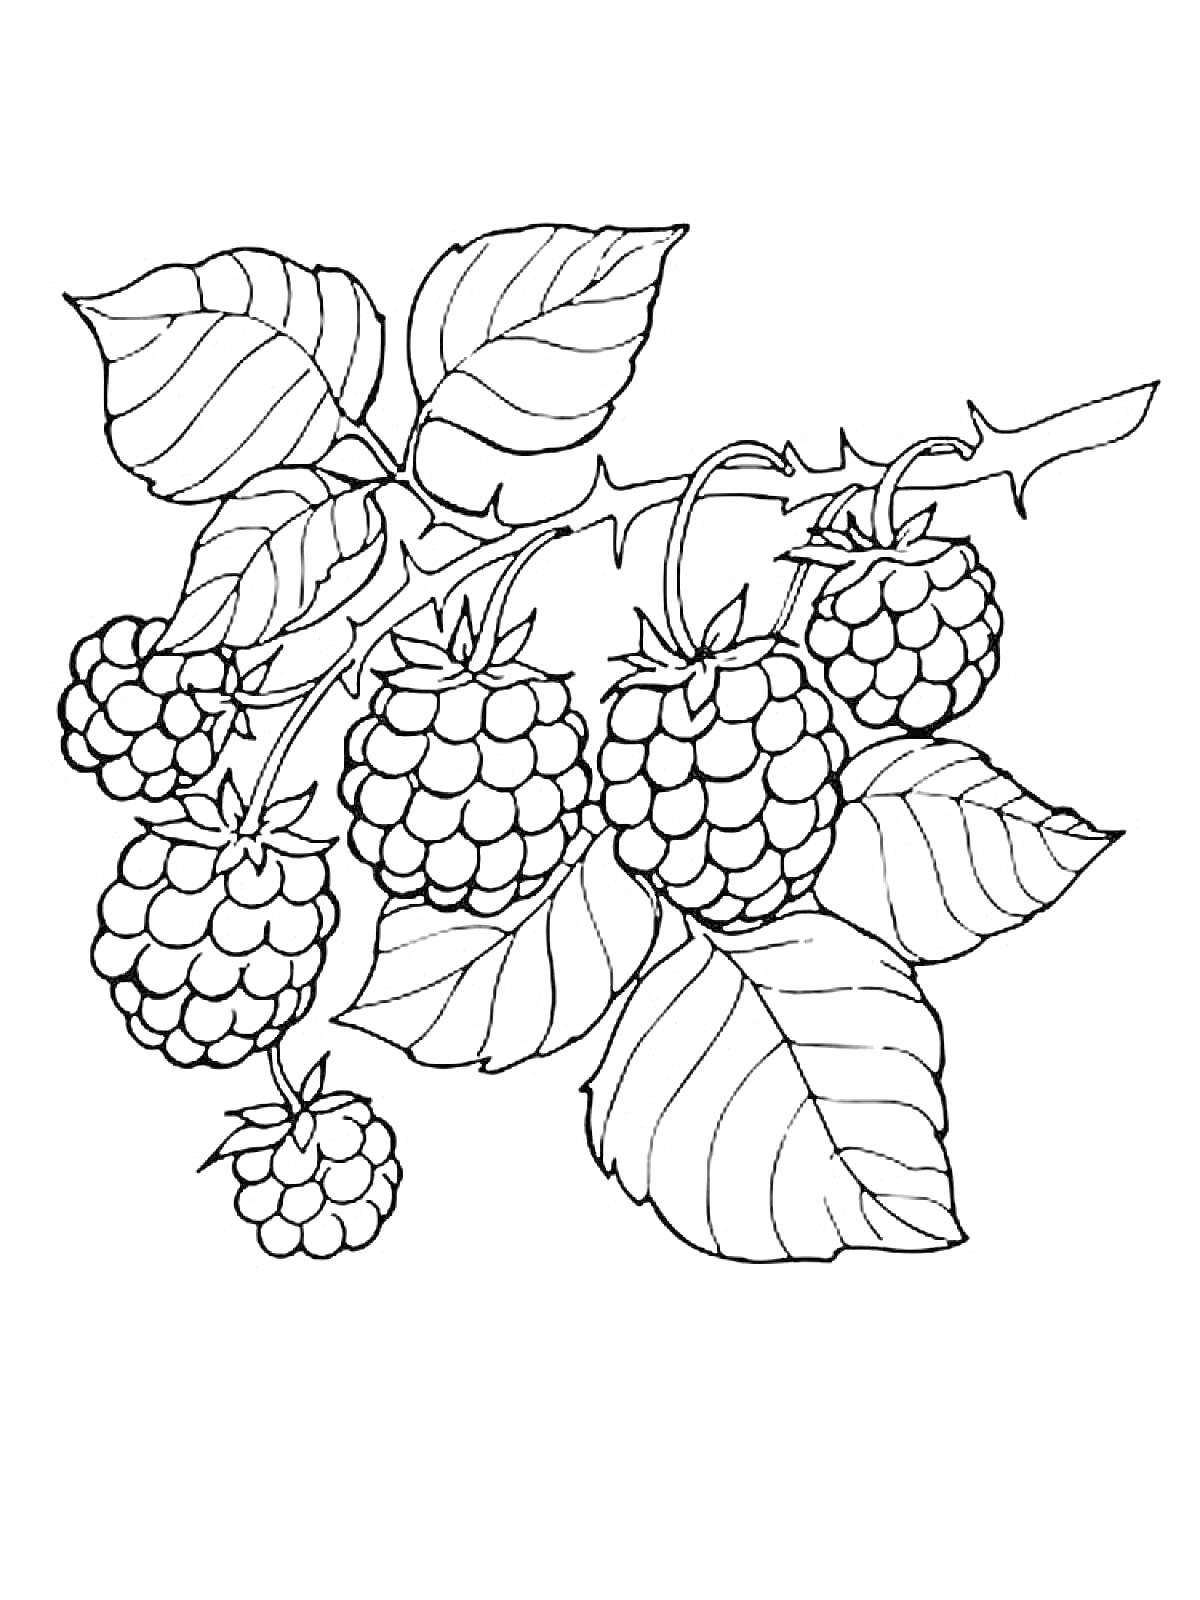 Раскраска Веточка ежевики с ягодами и листьями